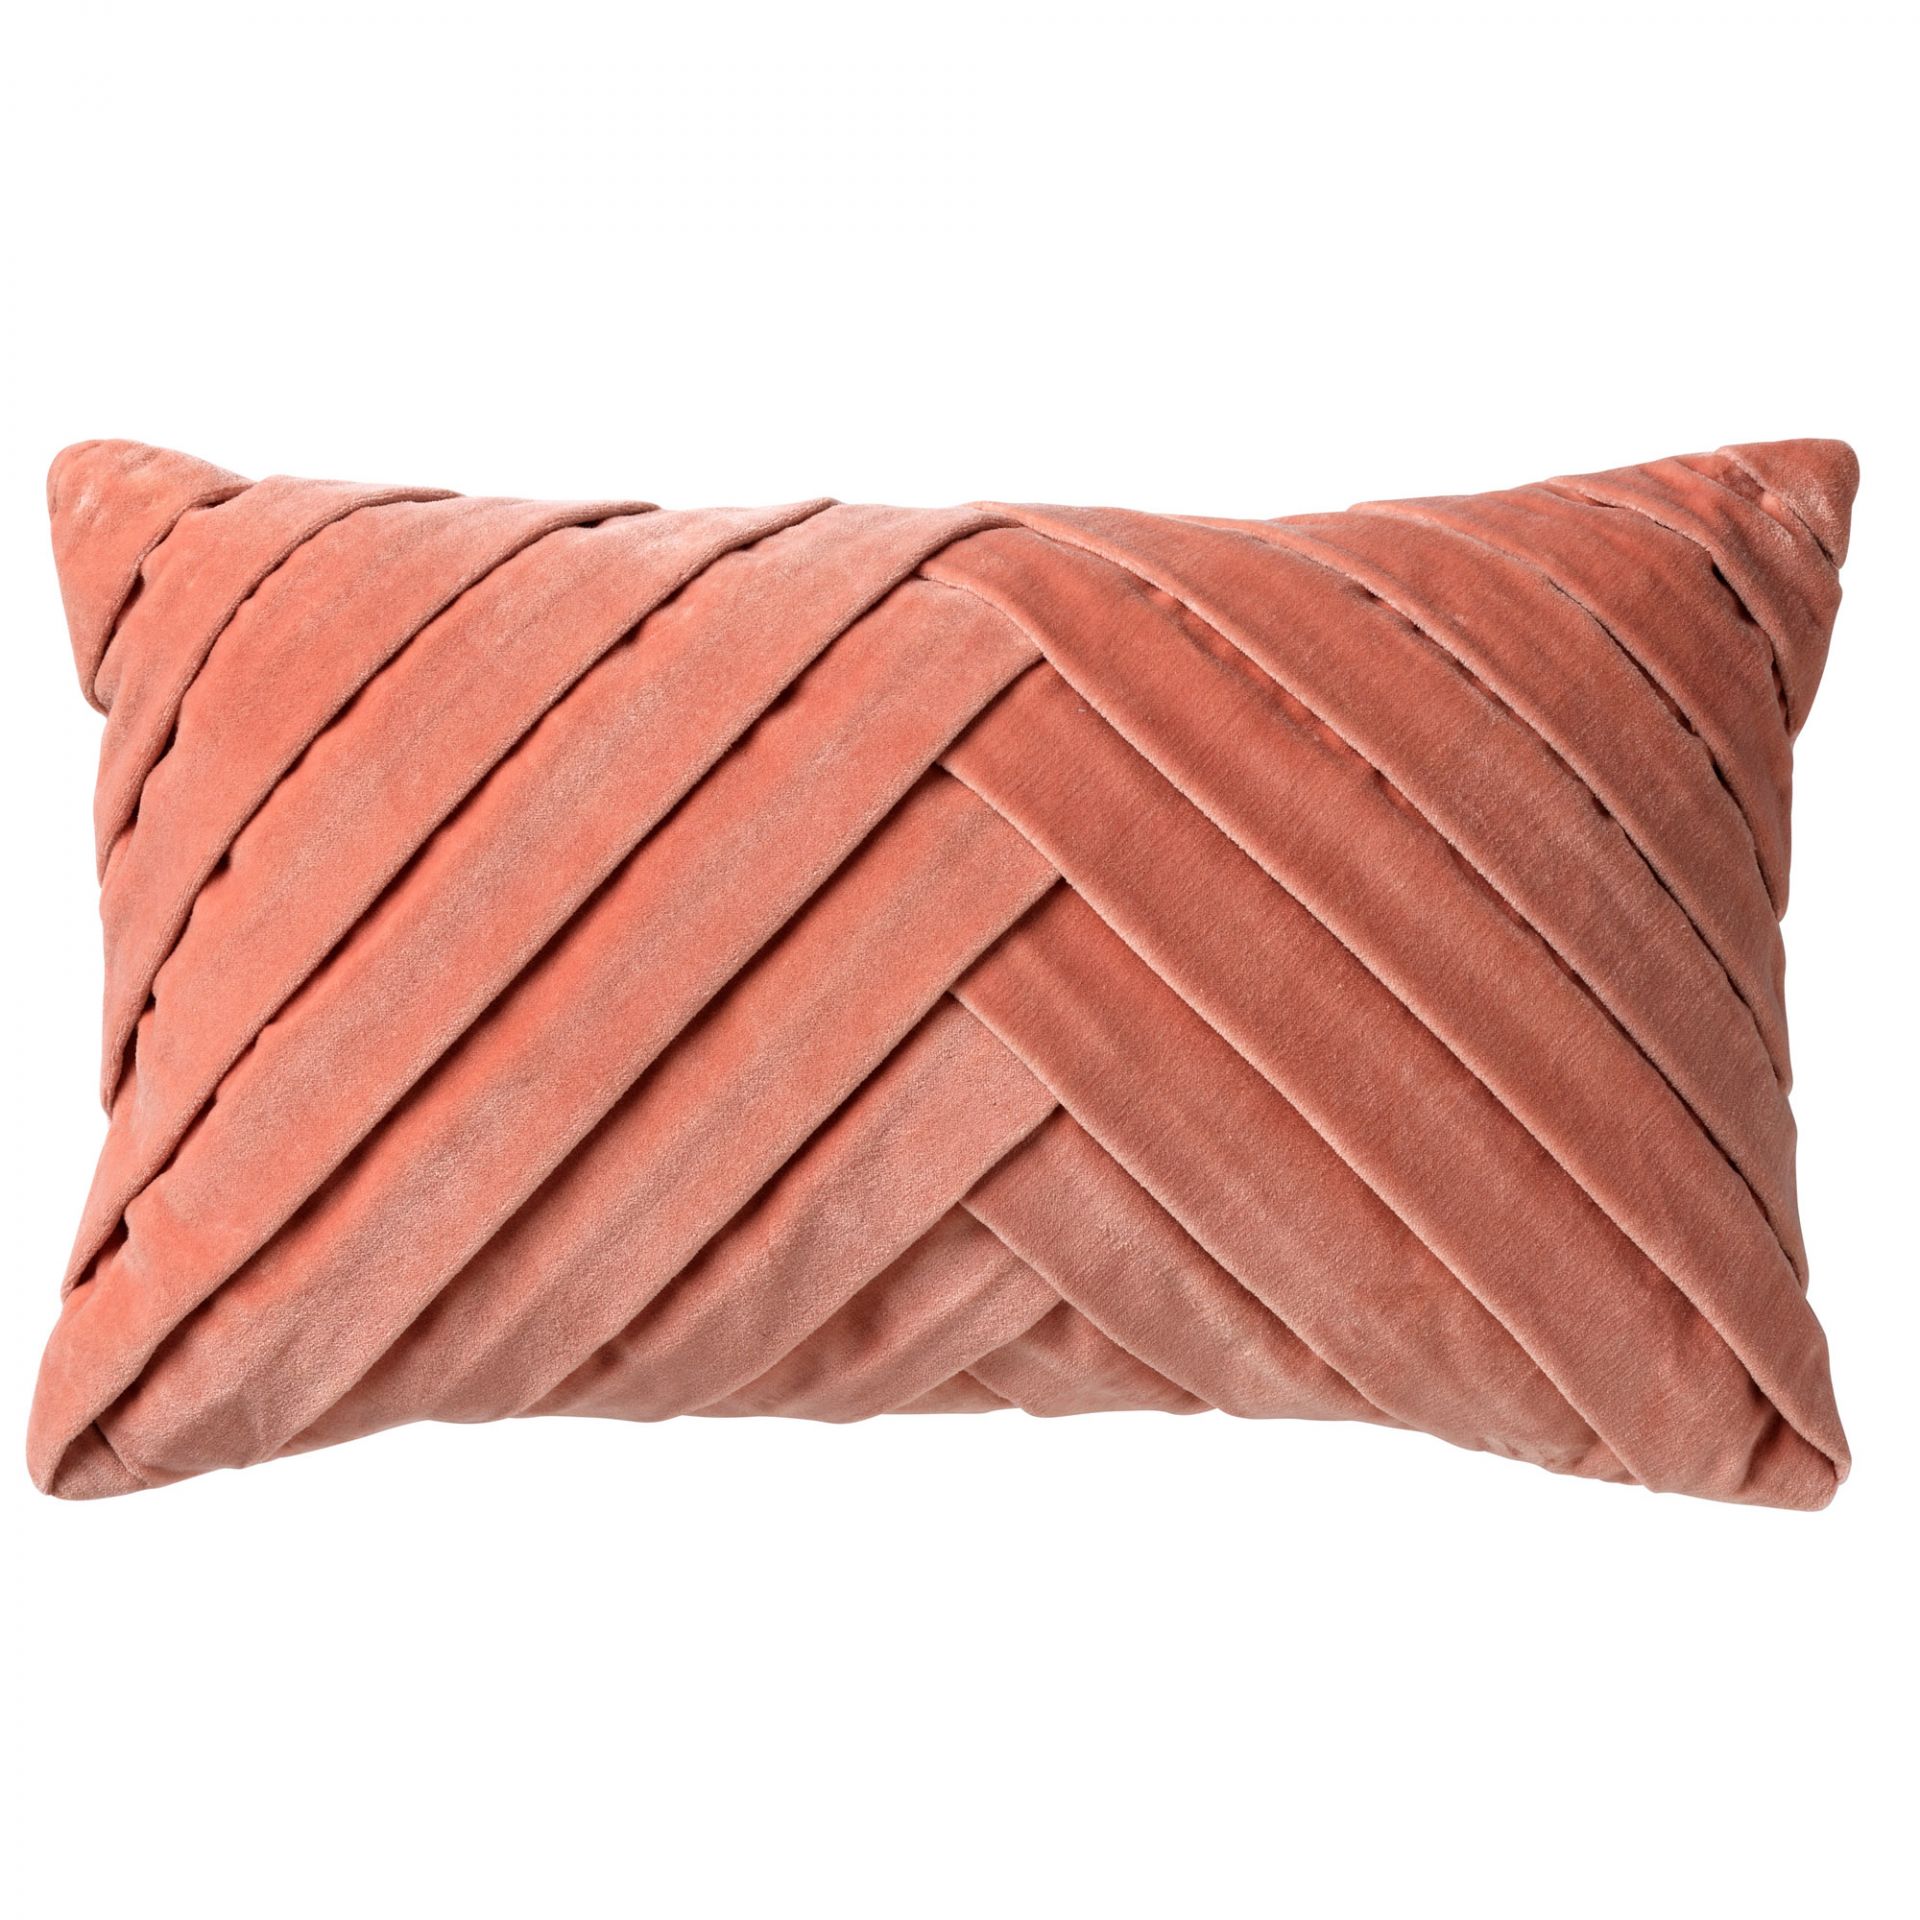 FEMM - Cushion 30x50 cm Muted Clay - pink